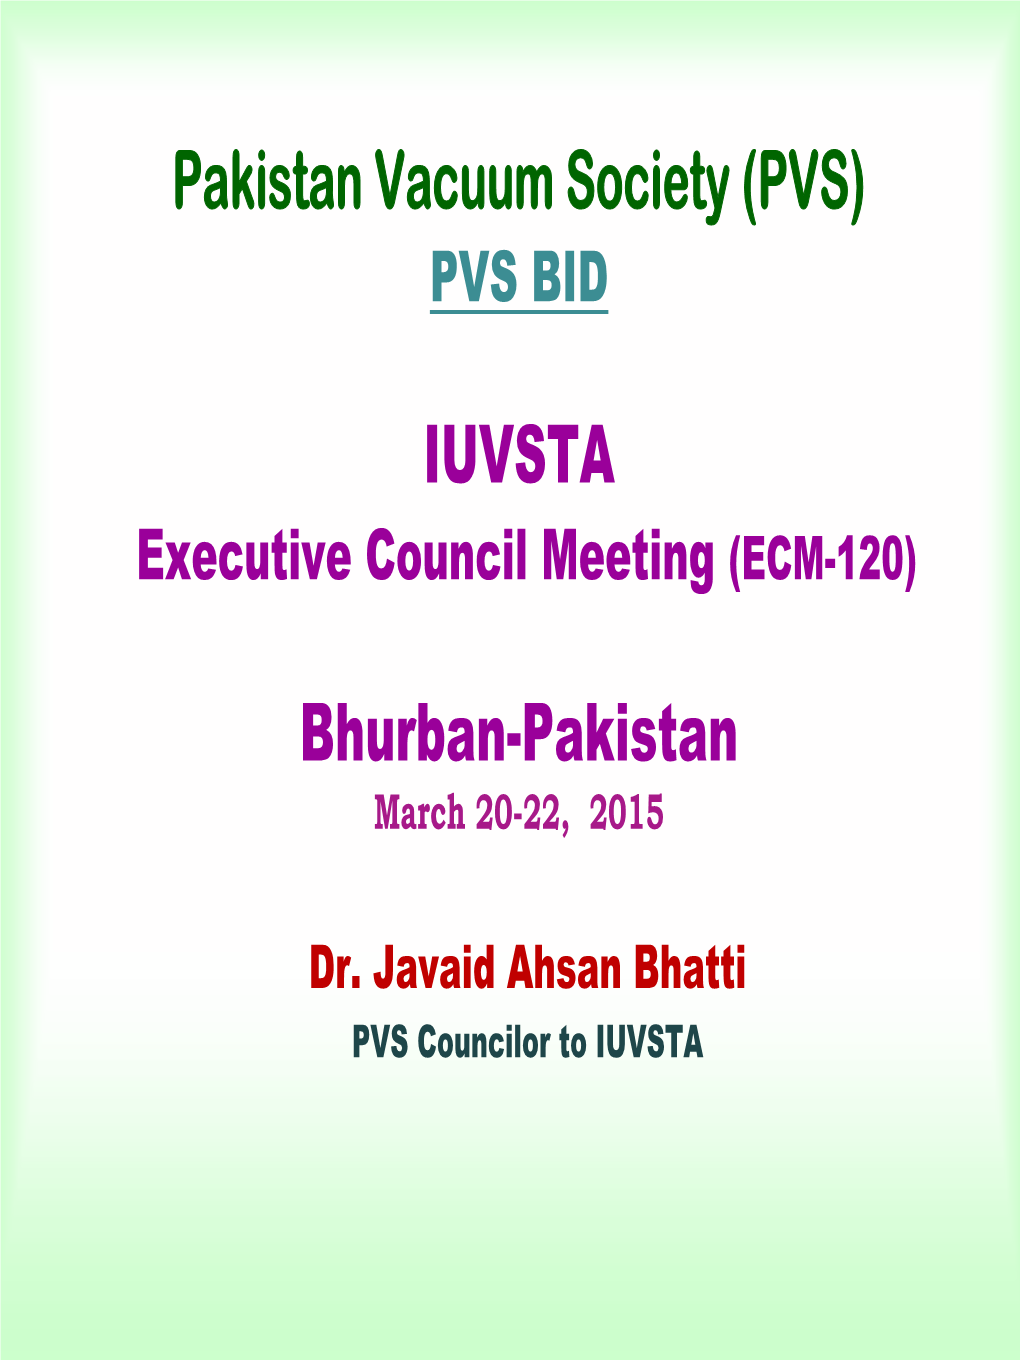 Pakistan Vacuum Society (PVS) IUVSTA Bhurban-Pakistan